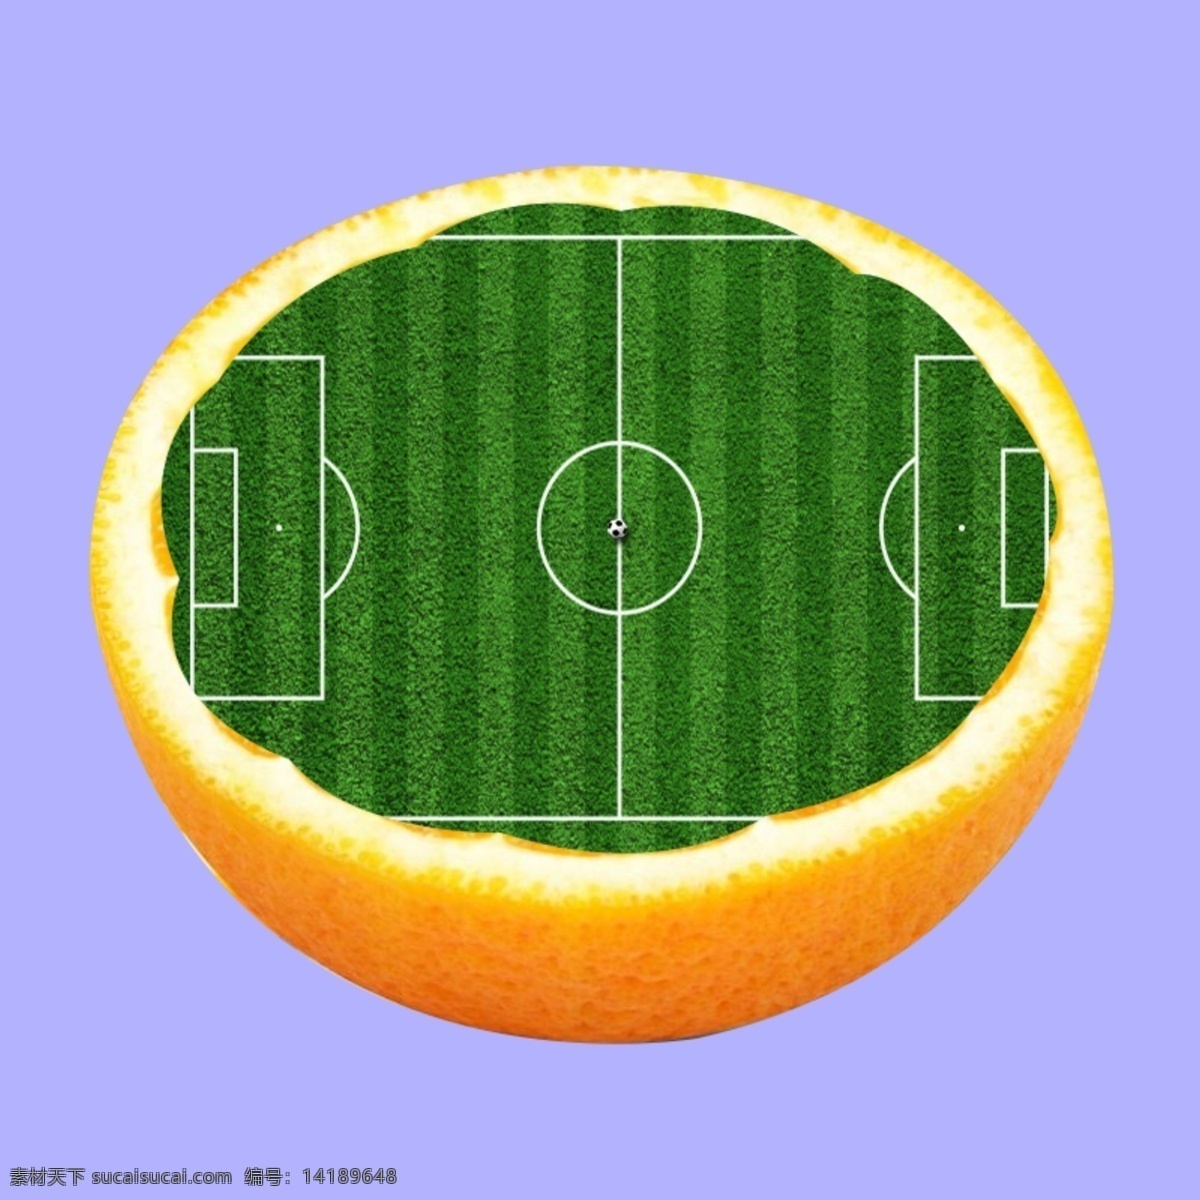 橙子 足球场 创意 广告 足球 红橙 创新 海报 环境设计 效果图